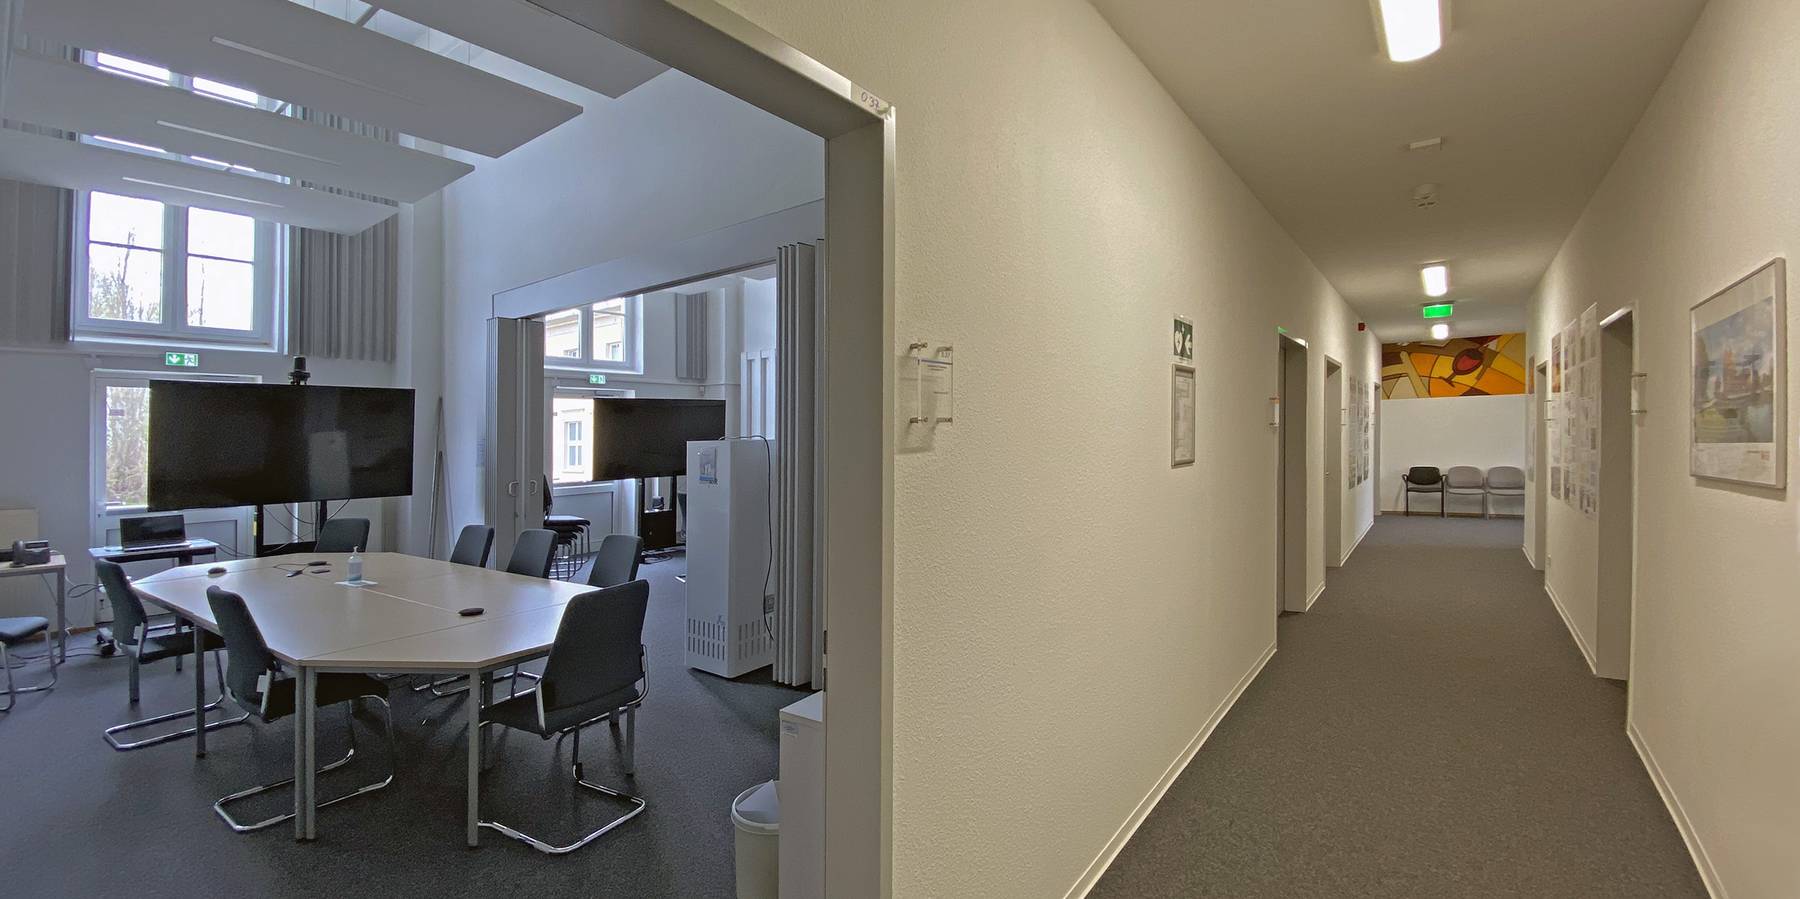 Umbau nach Bedarf - aus einem großen Saal wurden zwei Besprechungsräume (li.), ein Flur (Mitte) und drei Büros (re.). © 2021 Christian Hoffmann, FM M-V